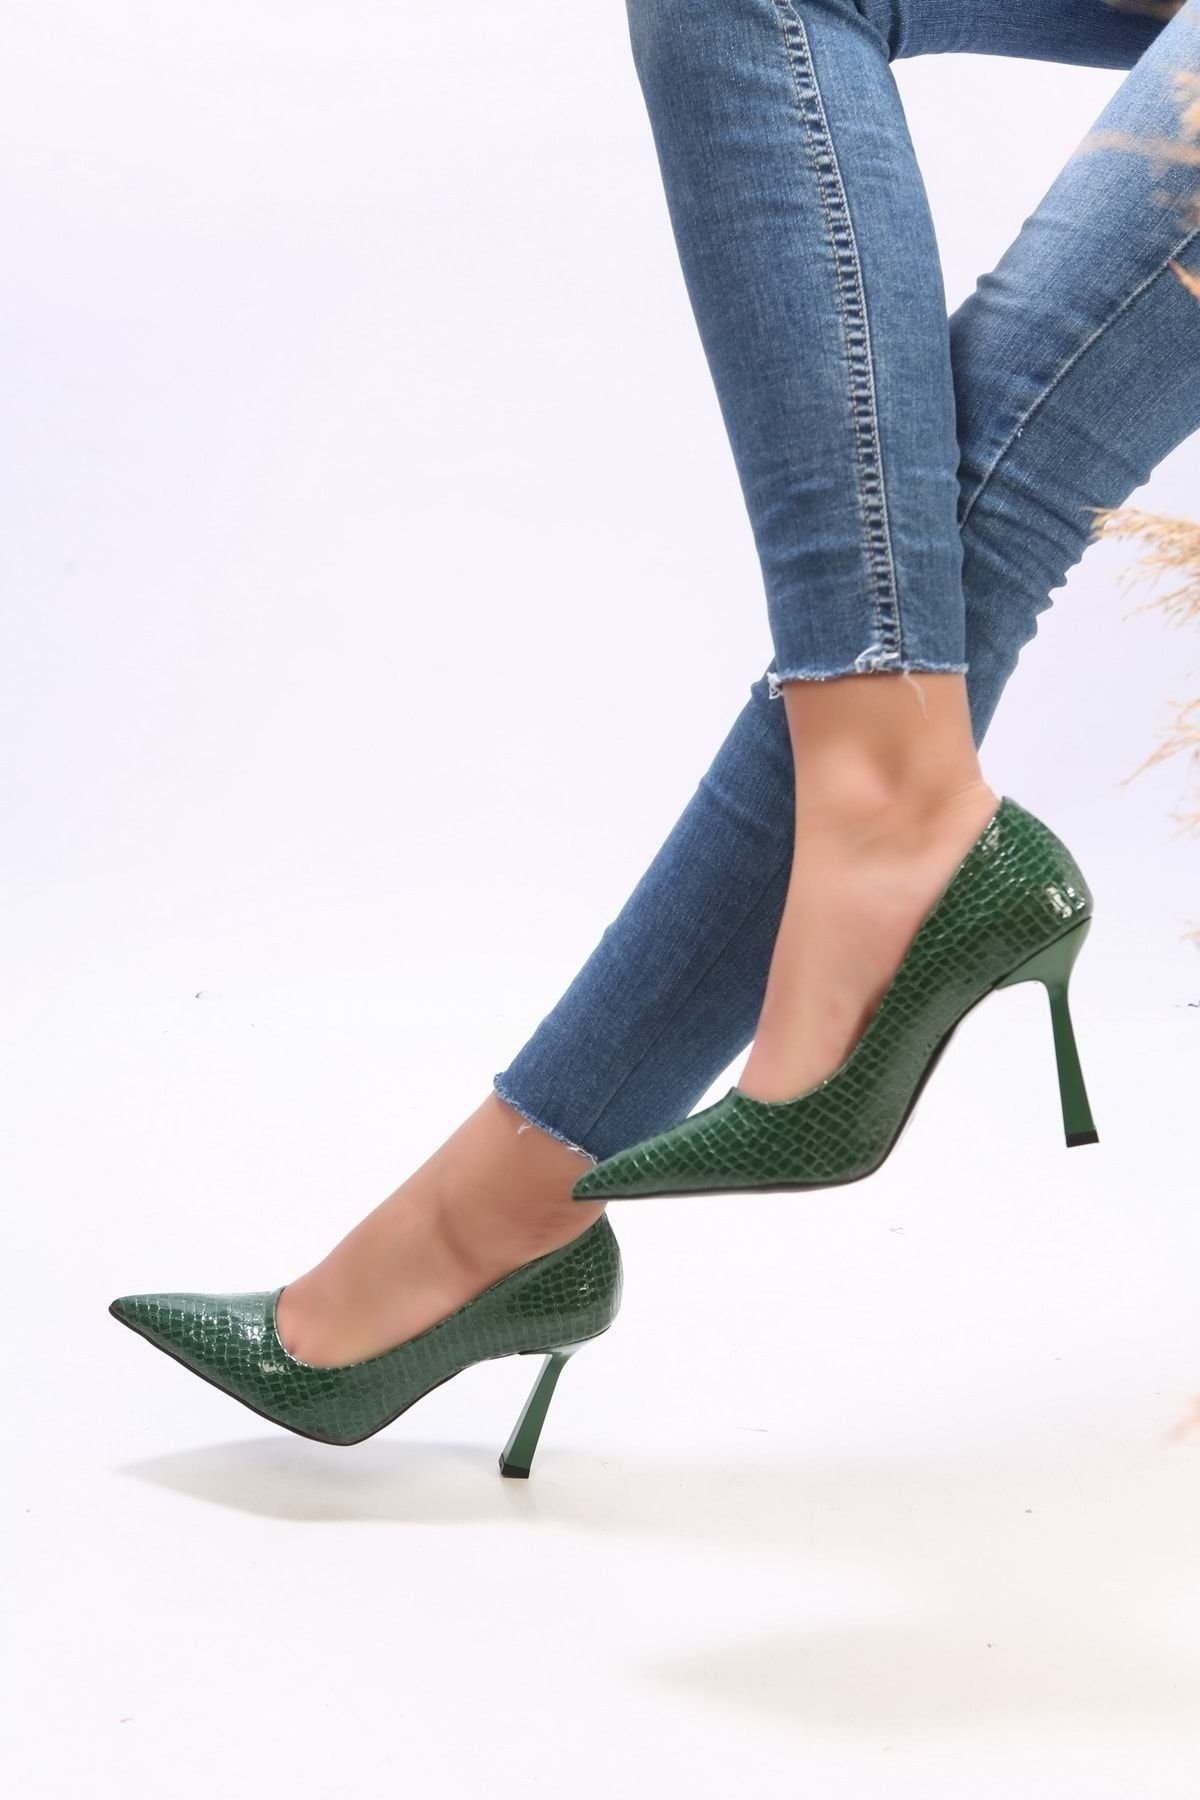 Shoeberry Kadın Plexi Yeşil Kroko Rugan Topuklu Ayakkabı Stiletto